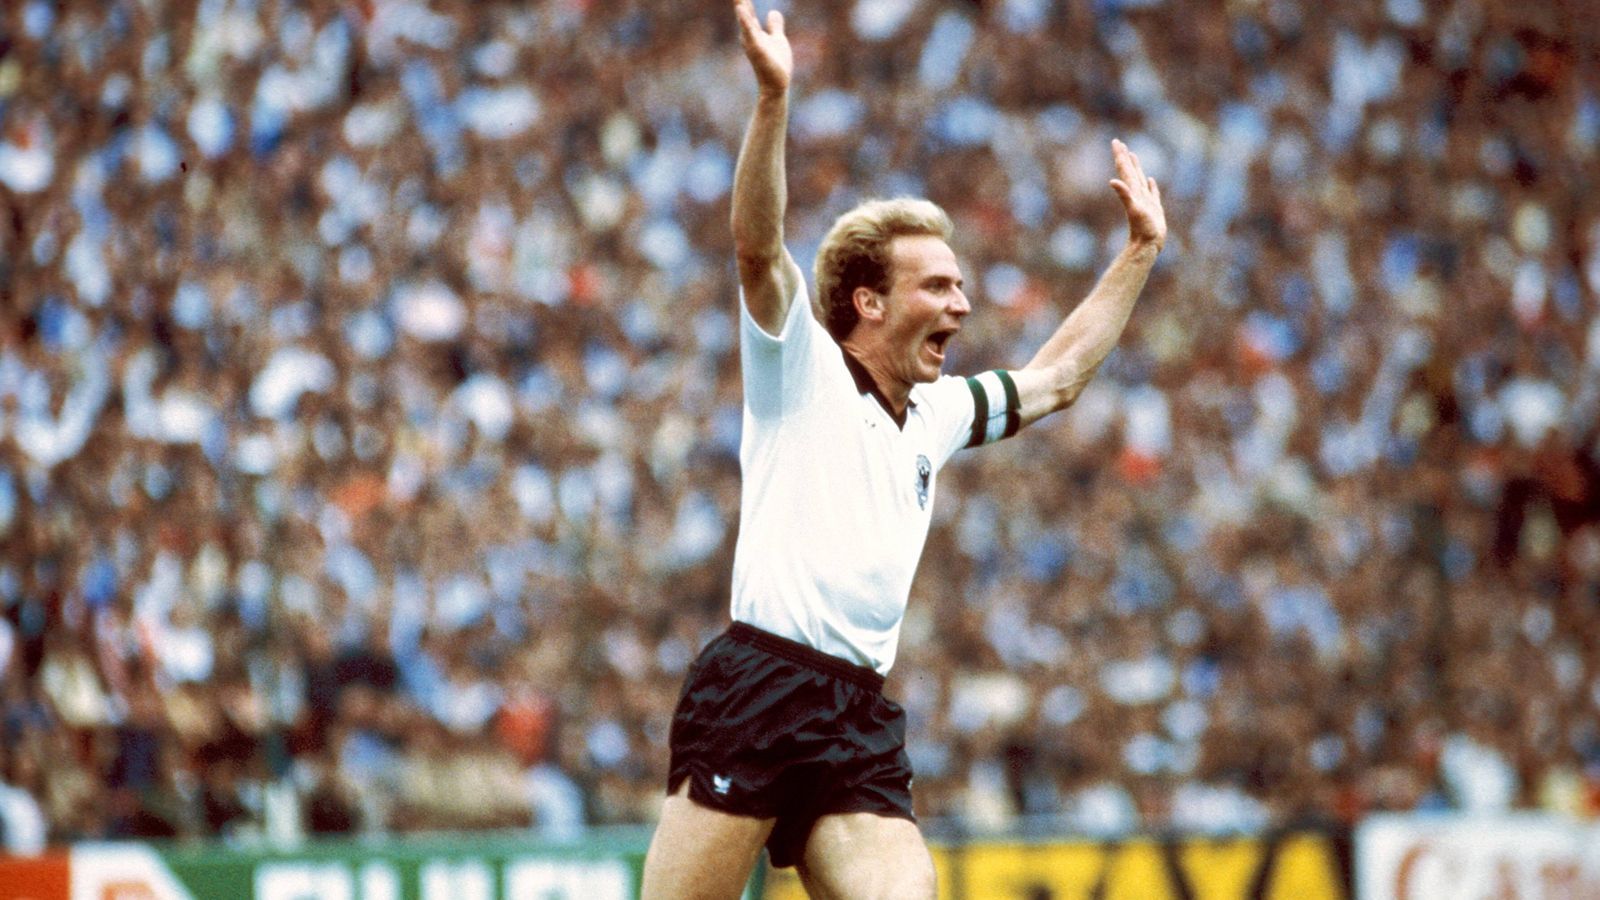 
                <strong>Karl-Heinz Rummenigge</strong><br>
                Karl-Heinz Rummenigge gehörte zu seiner Zeit zu den besten Stürmern der Welt. Dem FC Bayern bescherte er mit seinen Toren nationale und internationale Titel. Mit der DFB-Auswahl wurde der 67-Jährige zudem Europameister. Bis heute ist er zusammen mit Franz Beckenbauer der einzige Deutsche, der den Ballon d'Or zwei Mal gewinnen konnte. Eine Legendenkarte in FIFA ist daher längst überfällig.
              